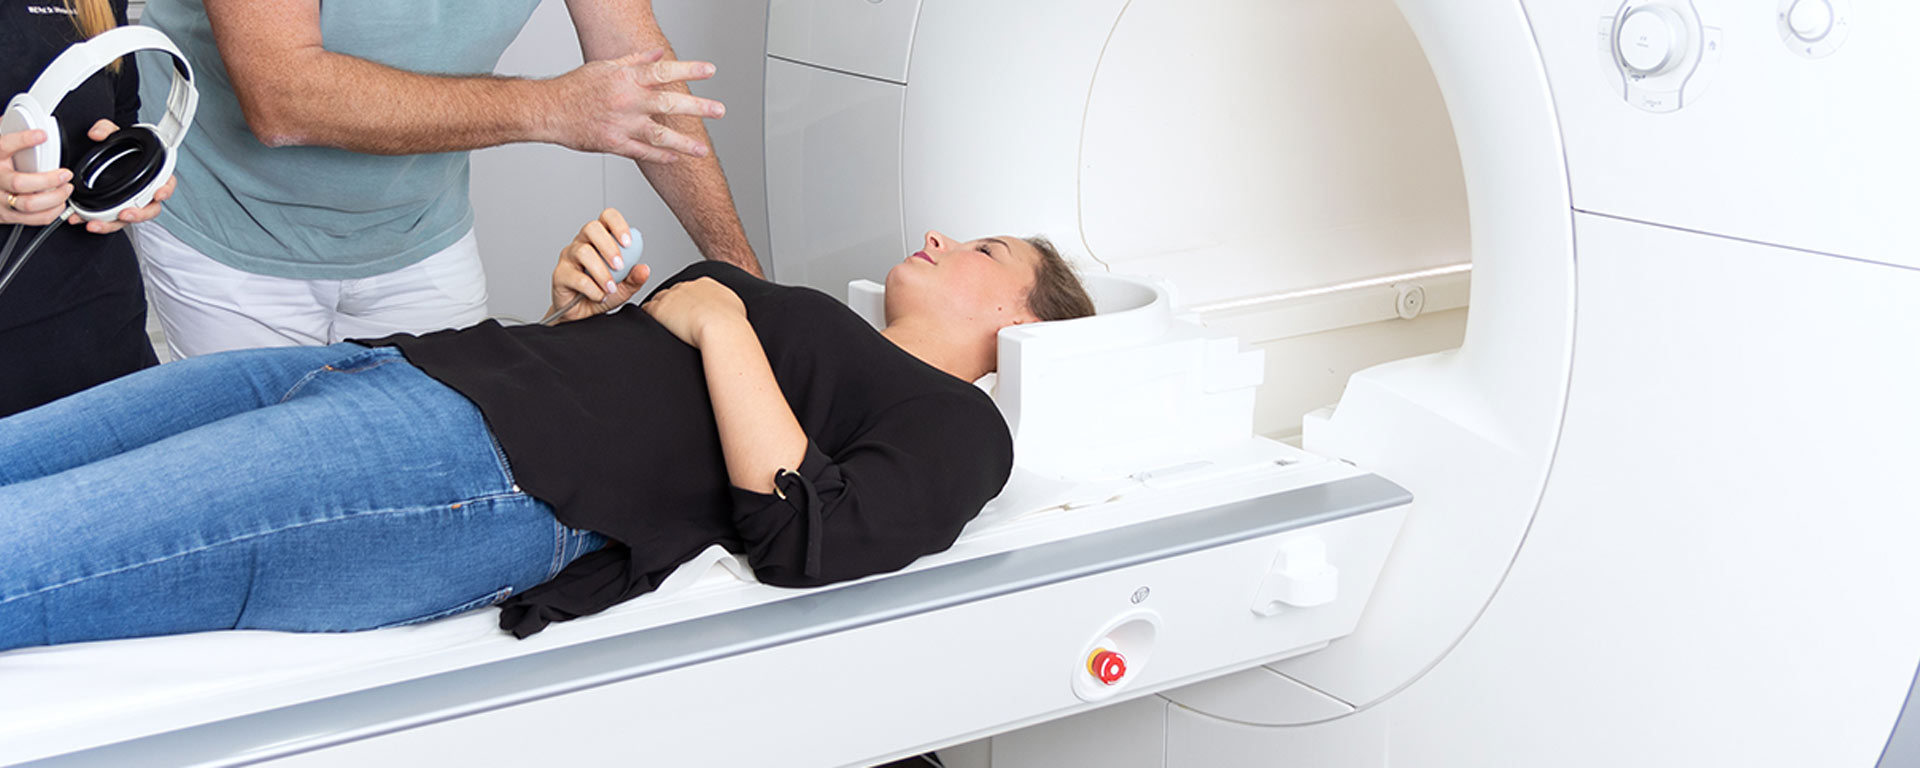 Radiologie und Nuklearmedizin - MVZ Uhlenbrock am St. Rochus-Hospital - Lukas Klinikum